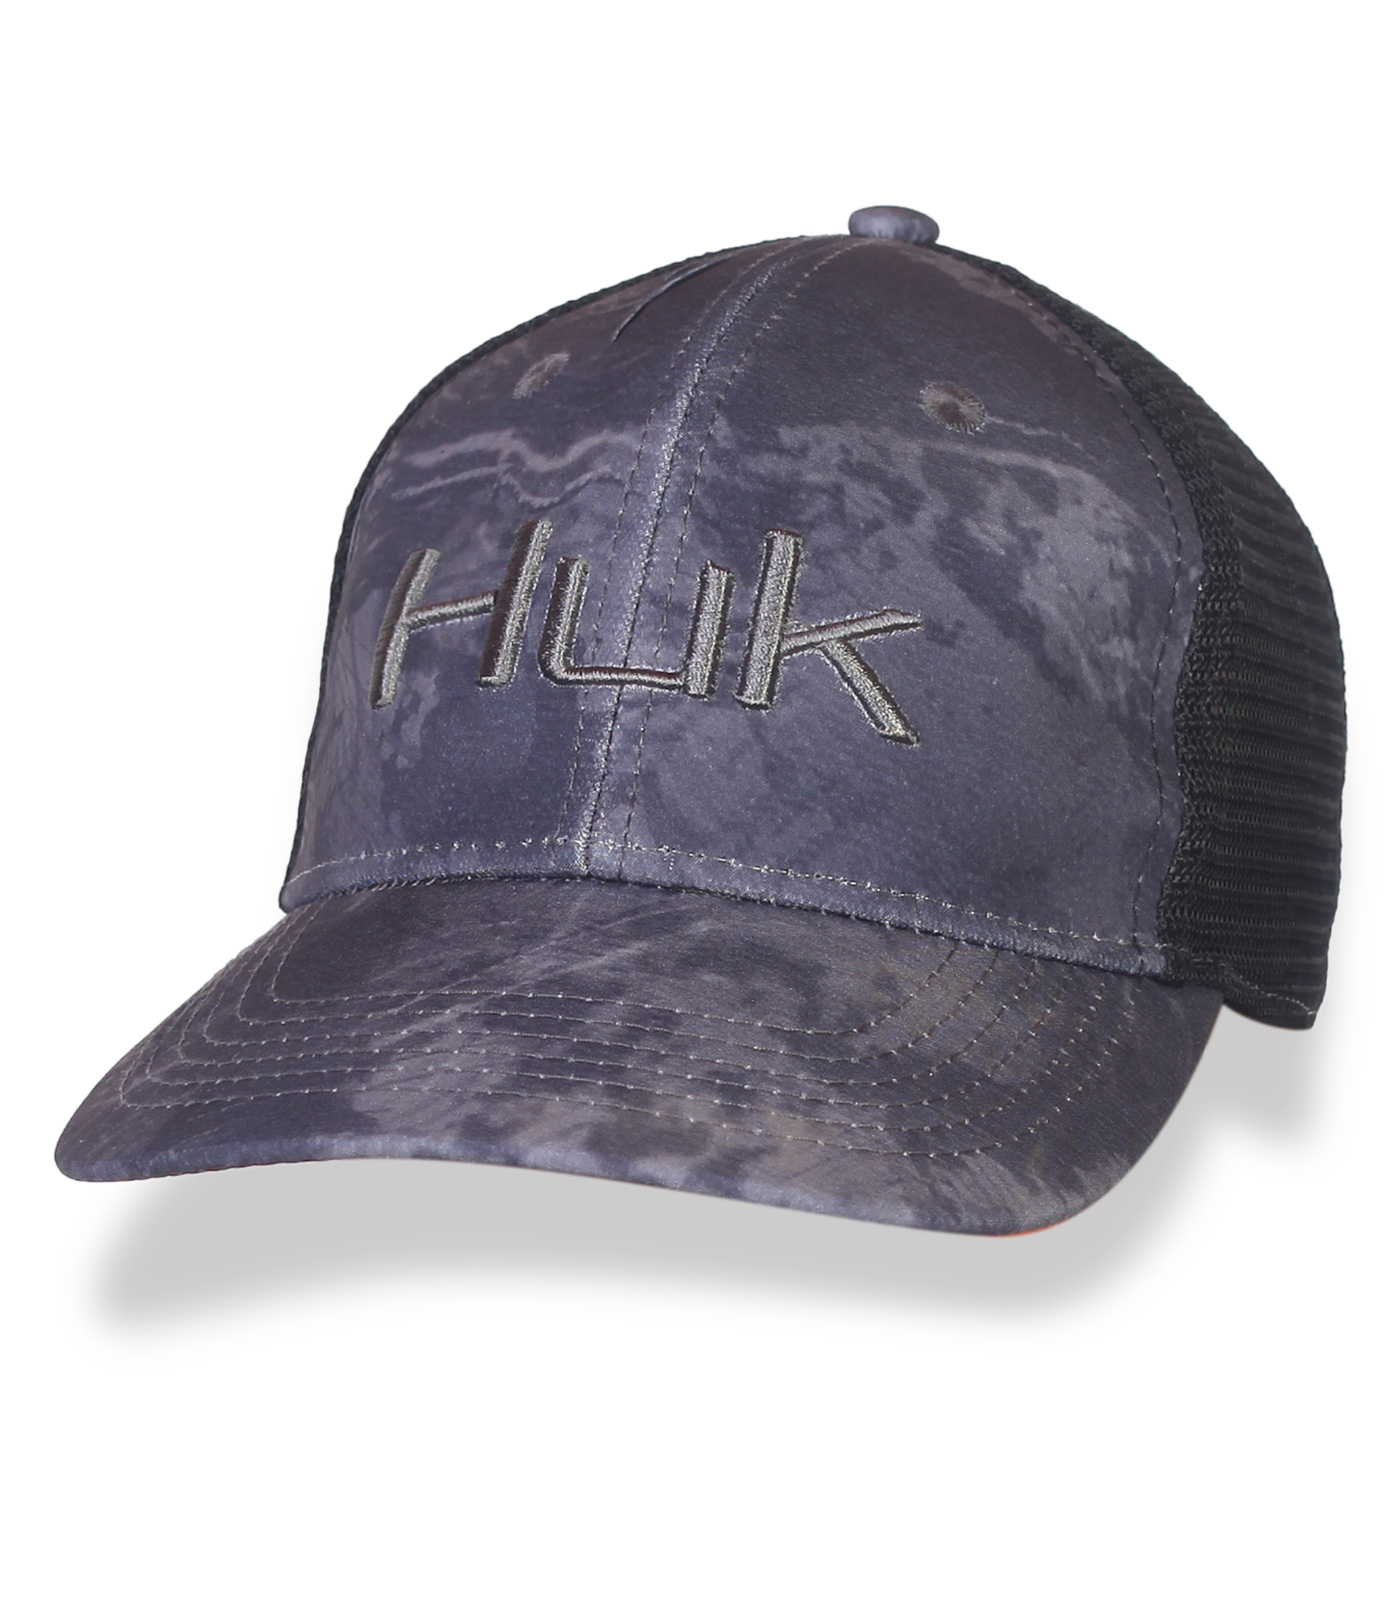 Серая бейсболка HUK с сеткой для вентиляции. Популярная модель на весну-лето для парней и мужчин №20033*